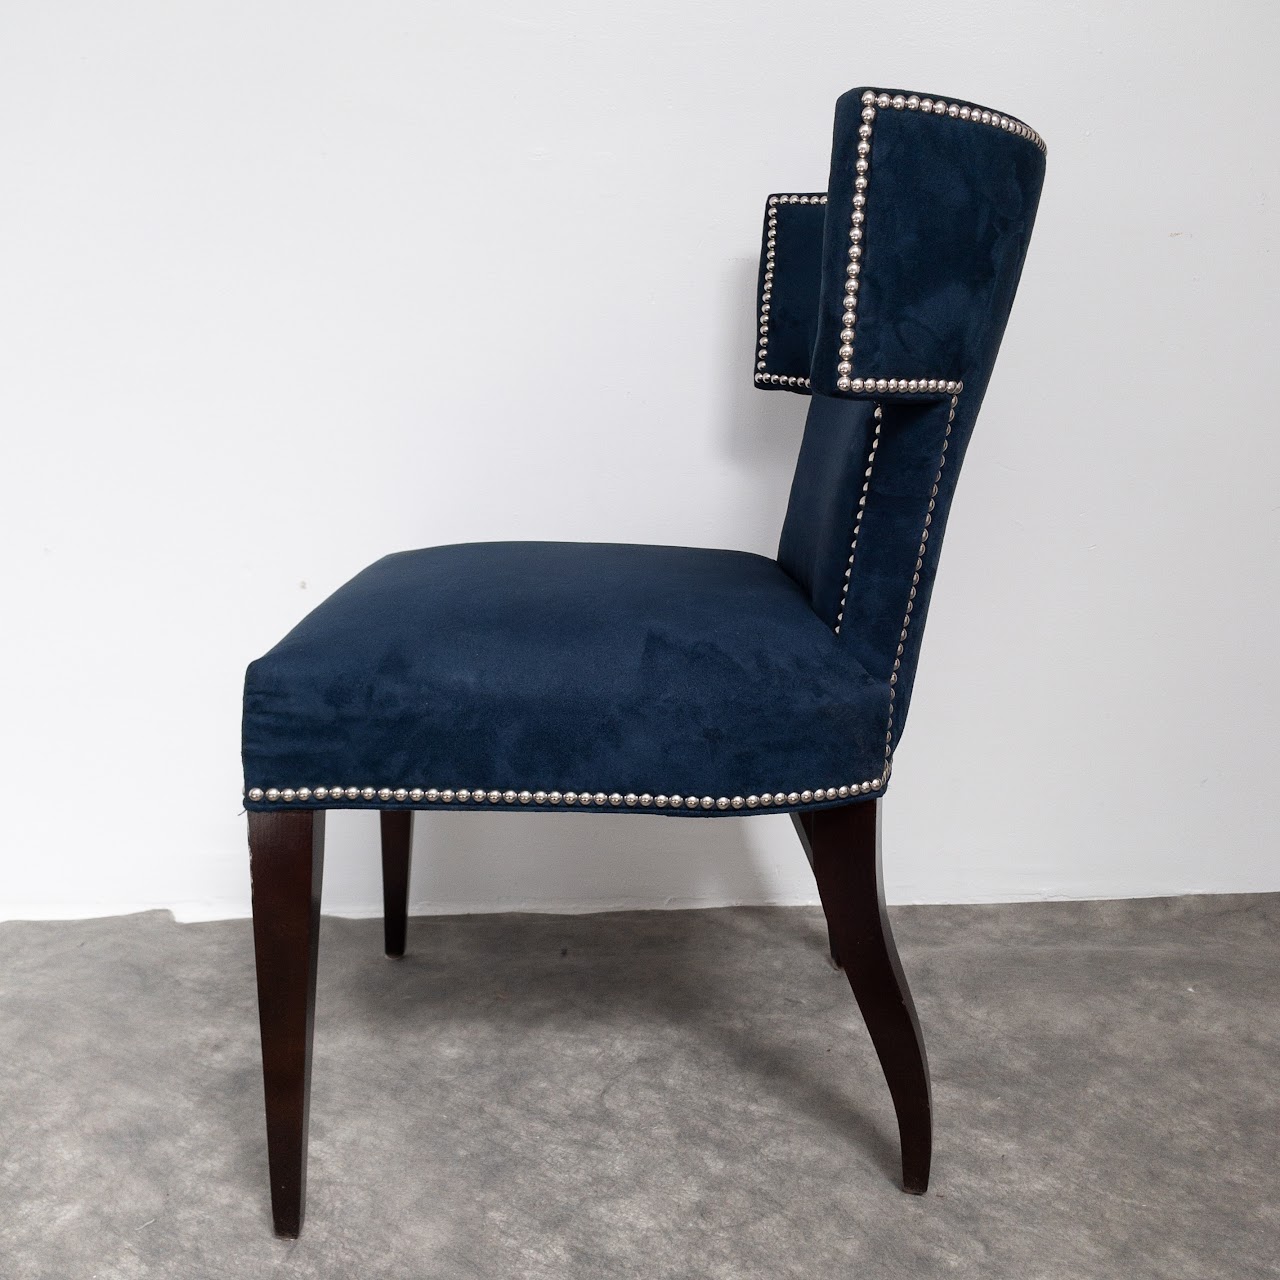 Kravet Furniture Hotchkiss Chair Pair